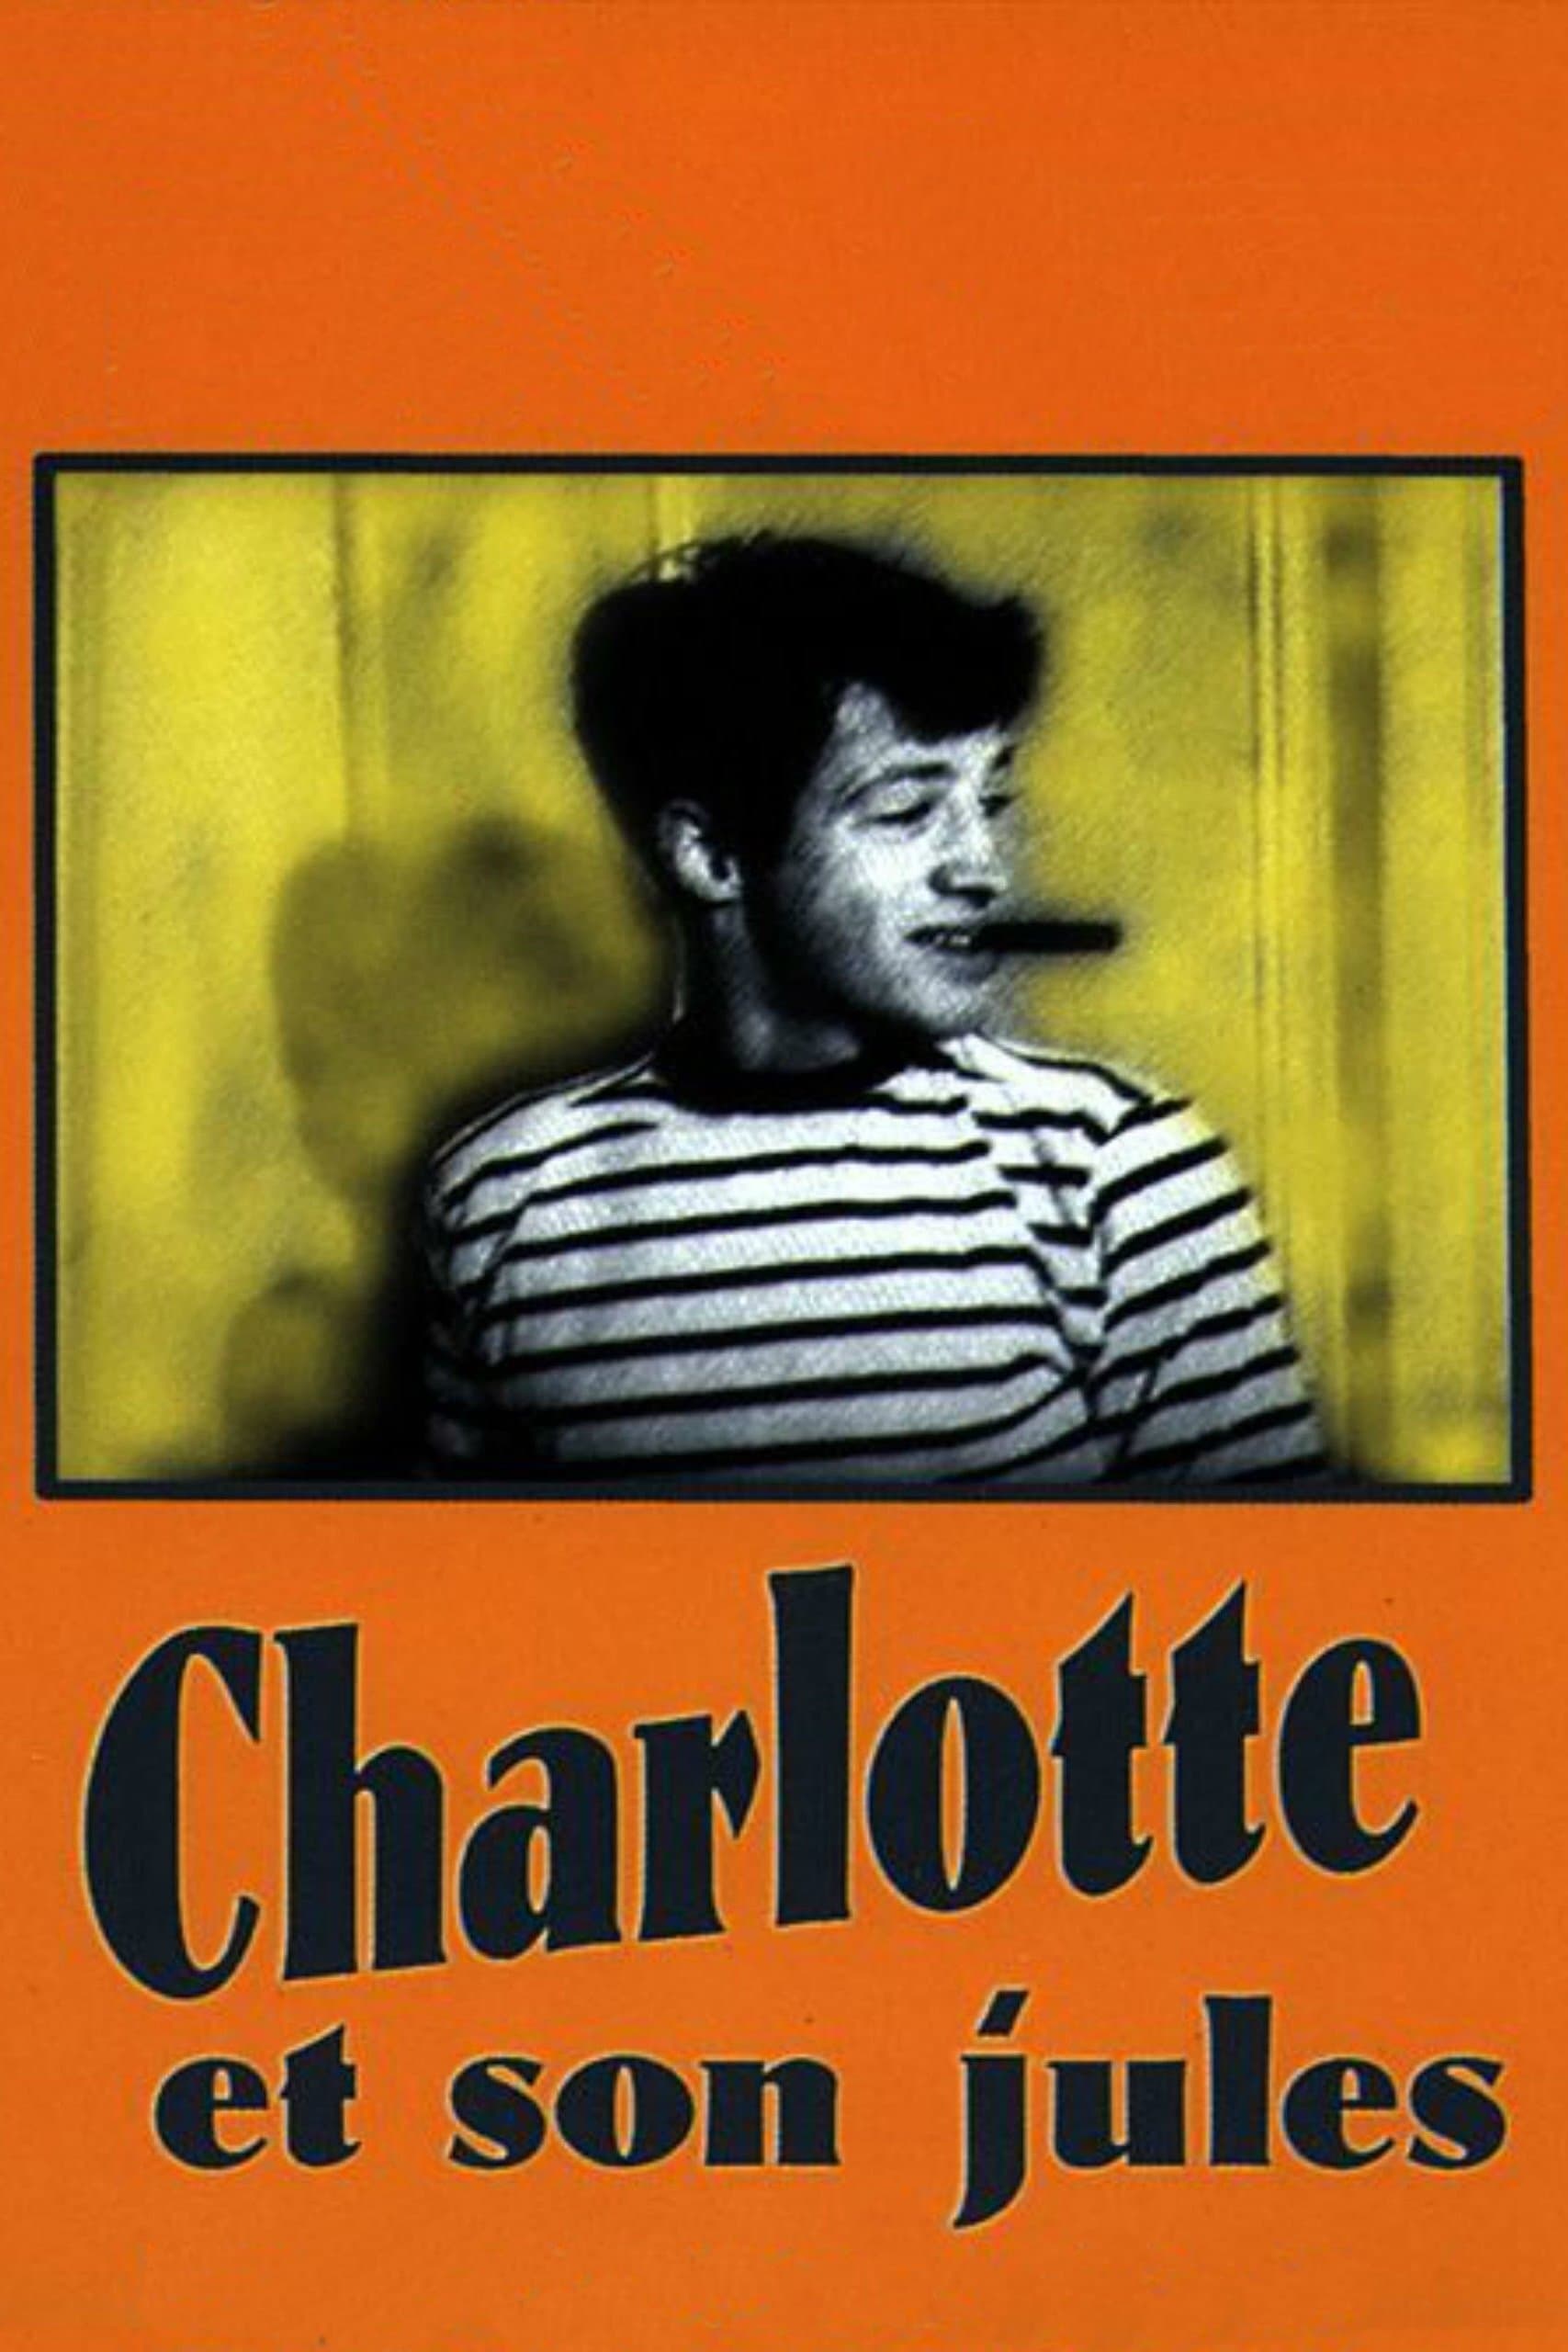 Charlotte and Her Boyfriend (1958)